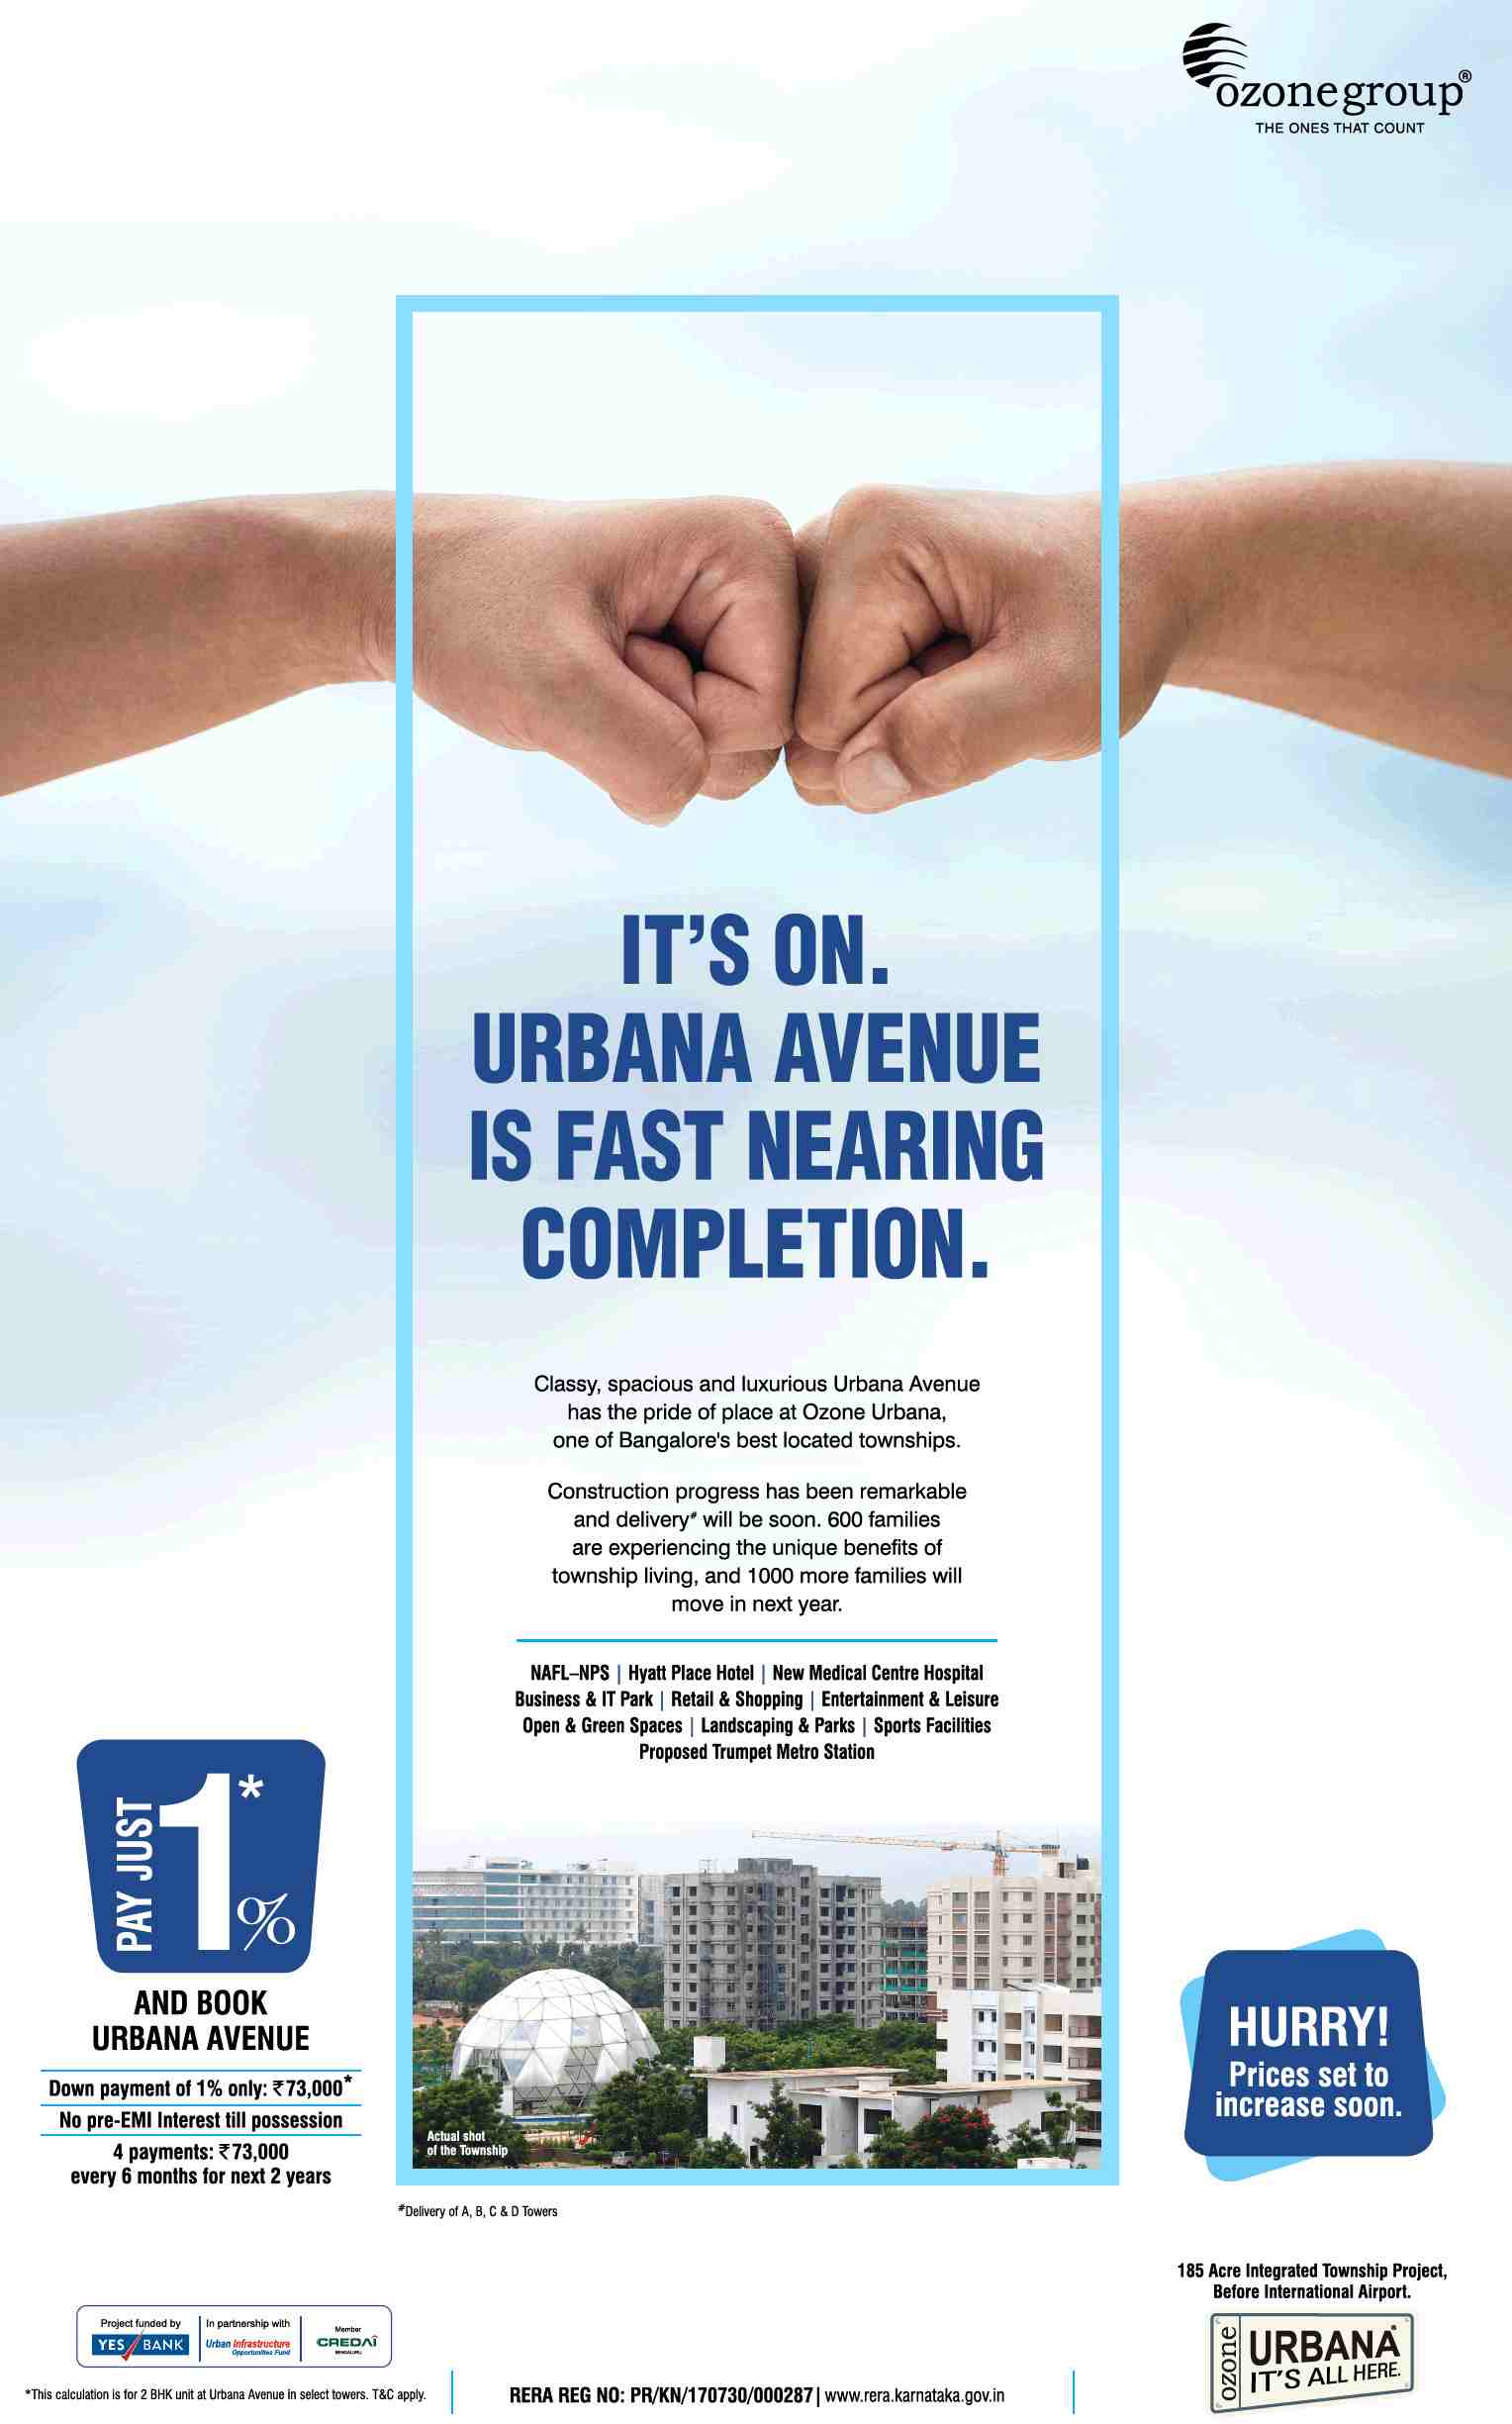 Pay no pre-EMI interest till possession at Ozone Urbana Avenue in Bangalore